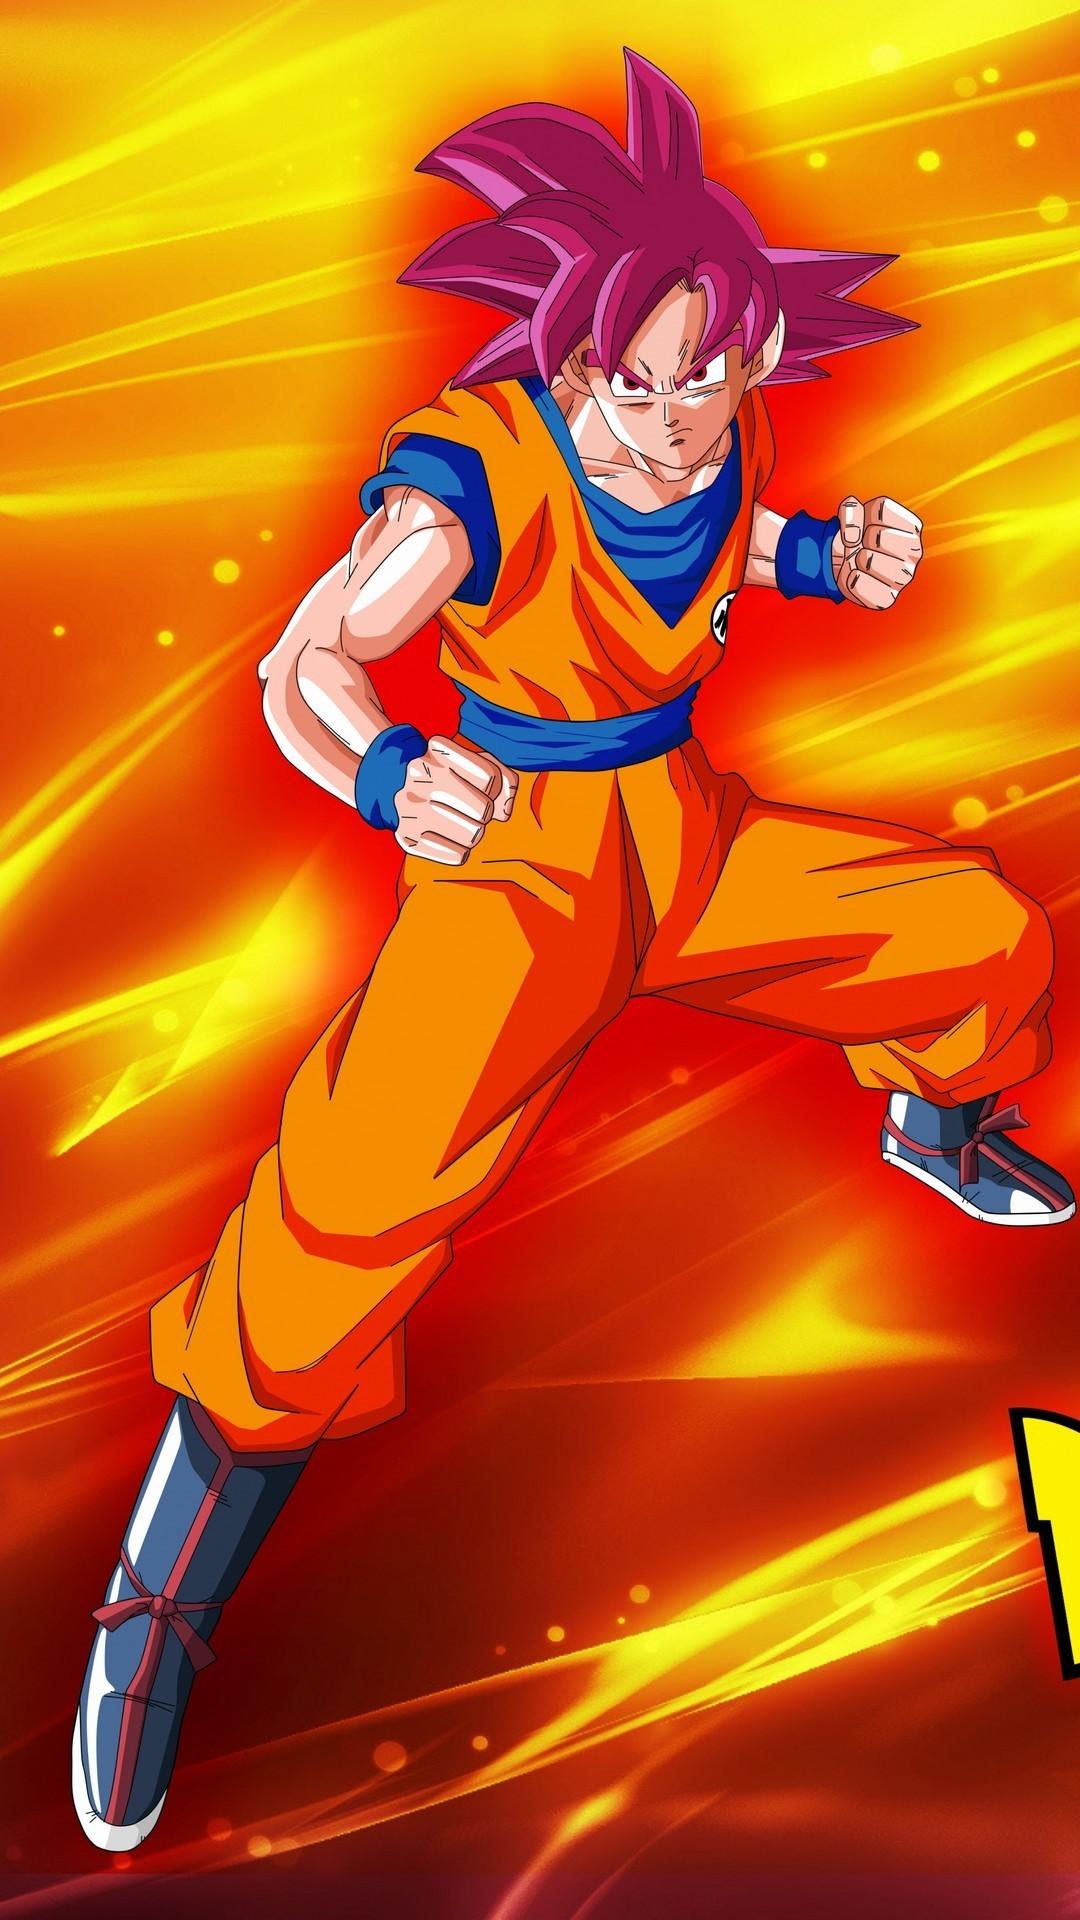 Goku Super Saiyan God Wallpaper Android Android Wallpaper